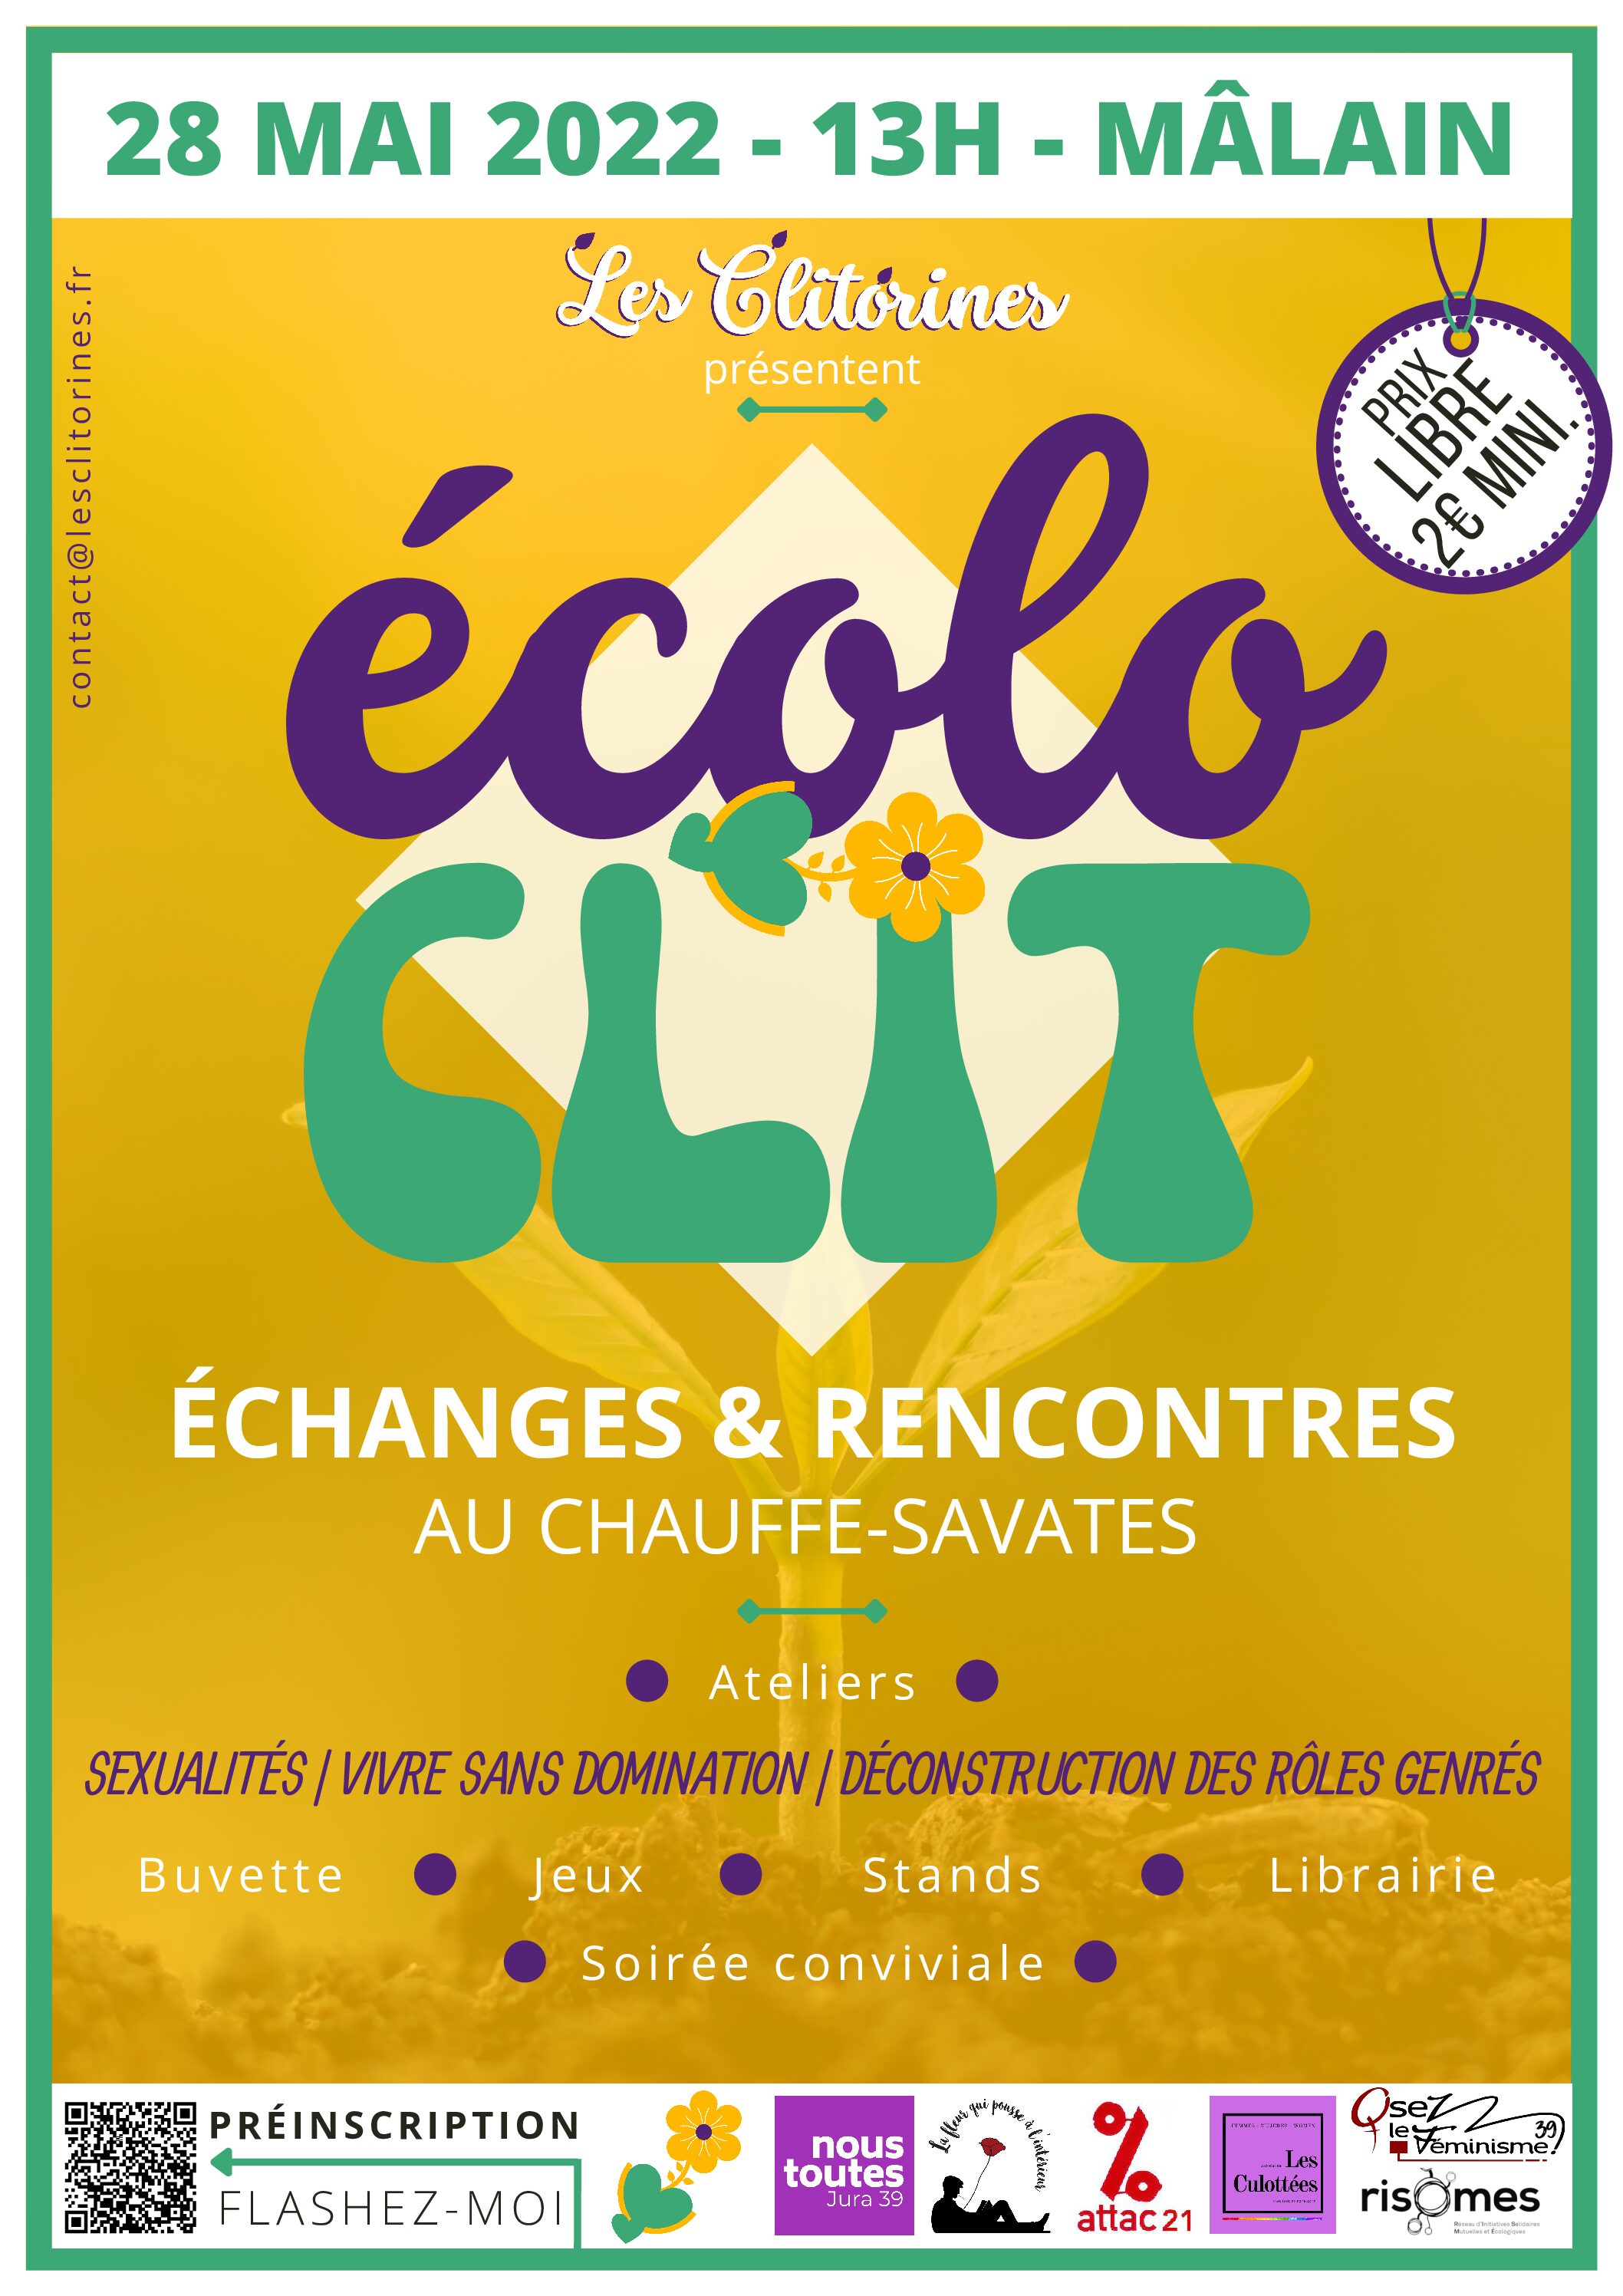 Les Clitorines organisent Ecolo’Clit à Mâlain le 28 mai !